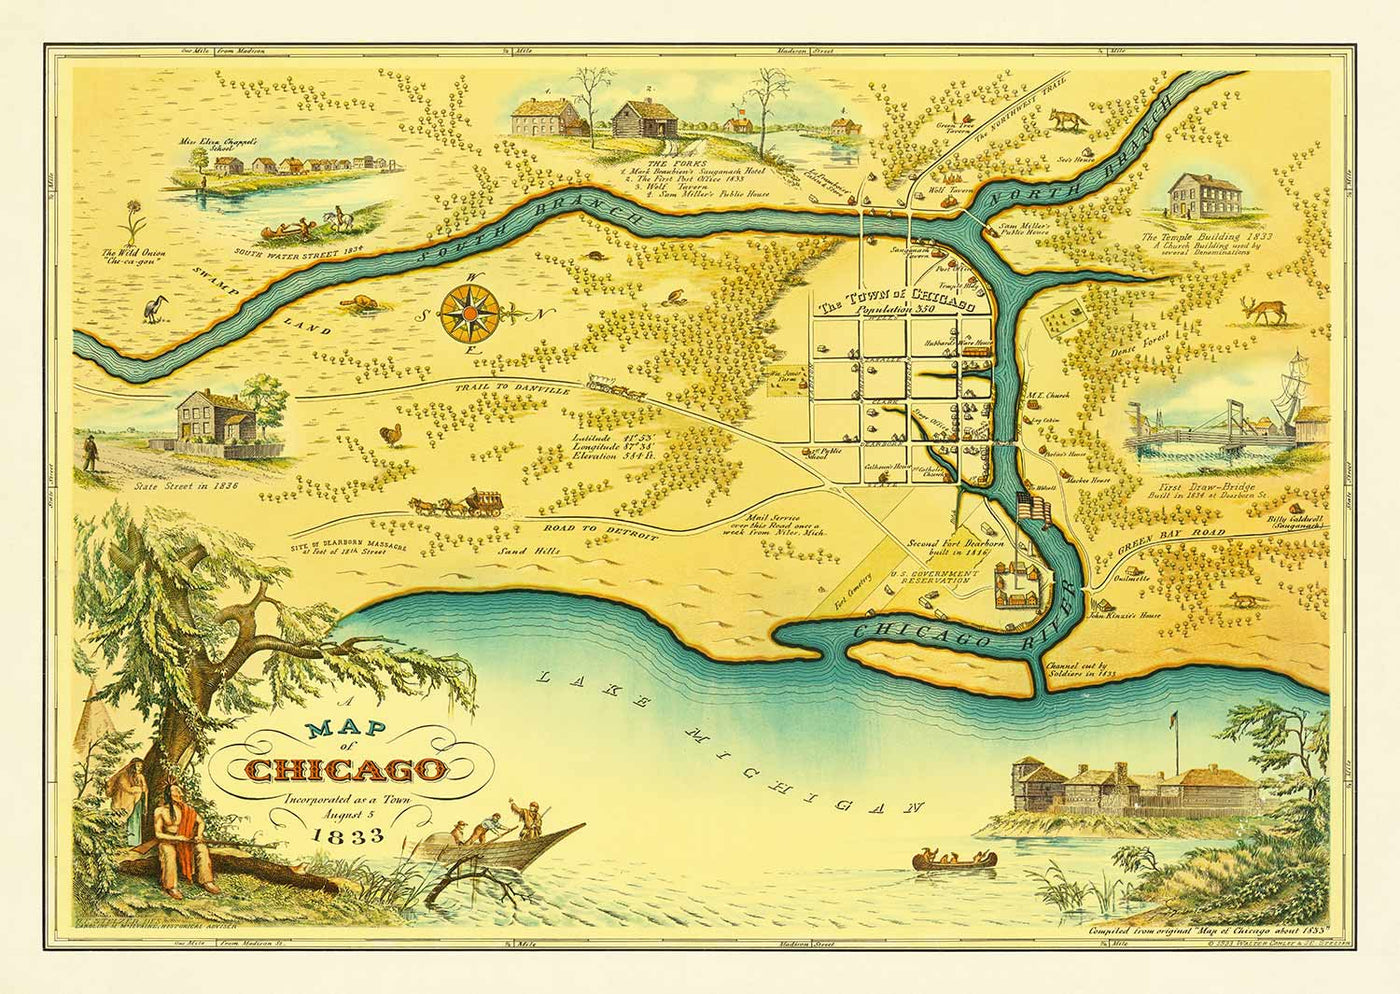 Alte Karte von Chicago, 1833 von stelzer & conley - 350 Pop. Town - Michigansee, Innenstadt, Chicago River